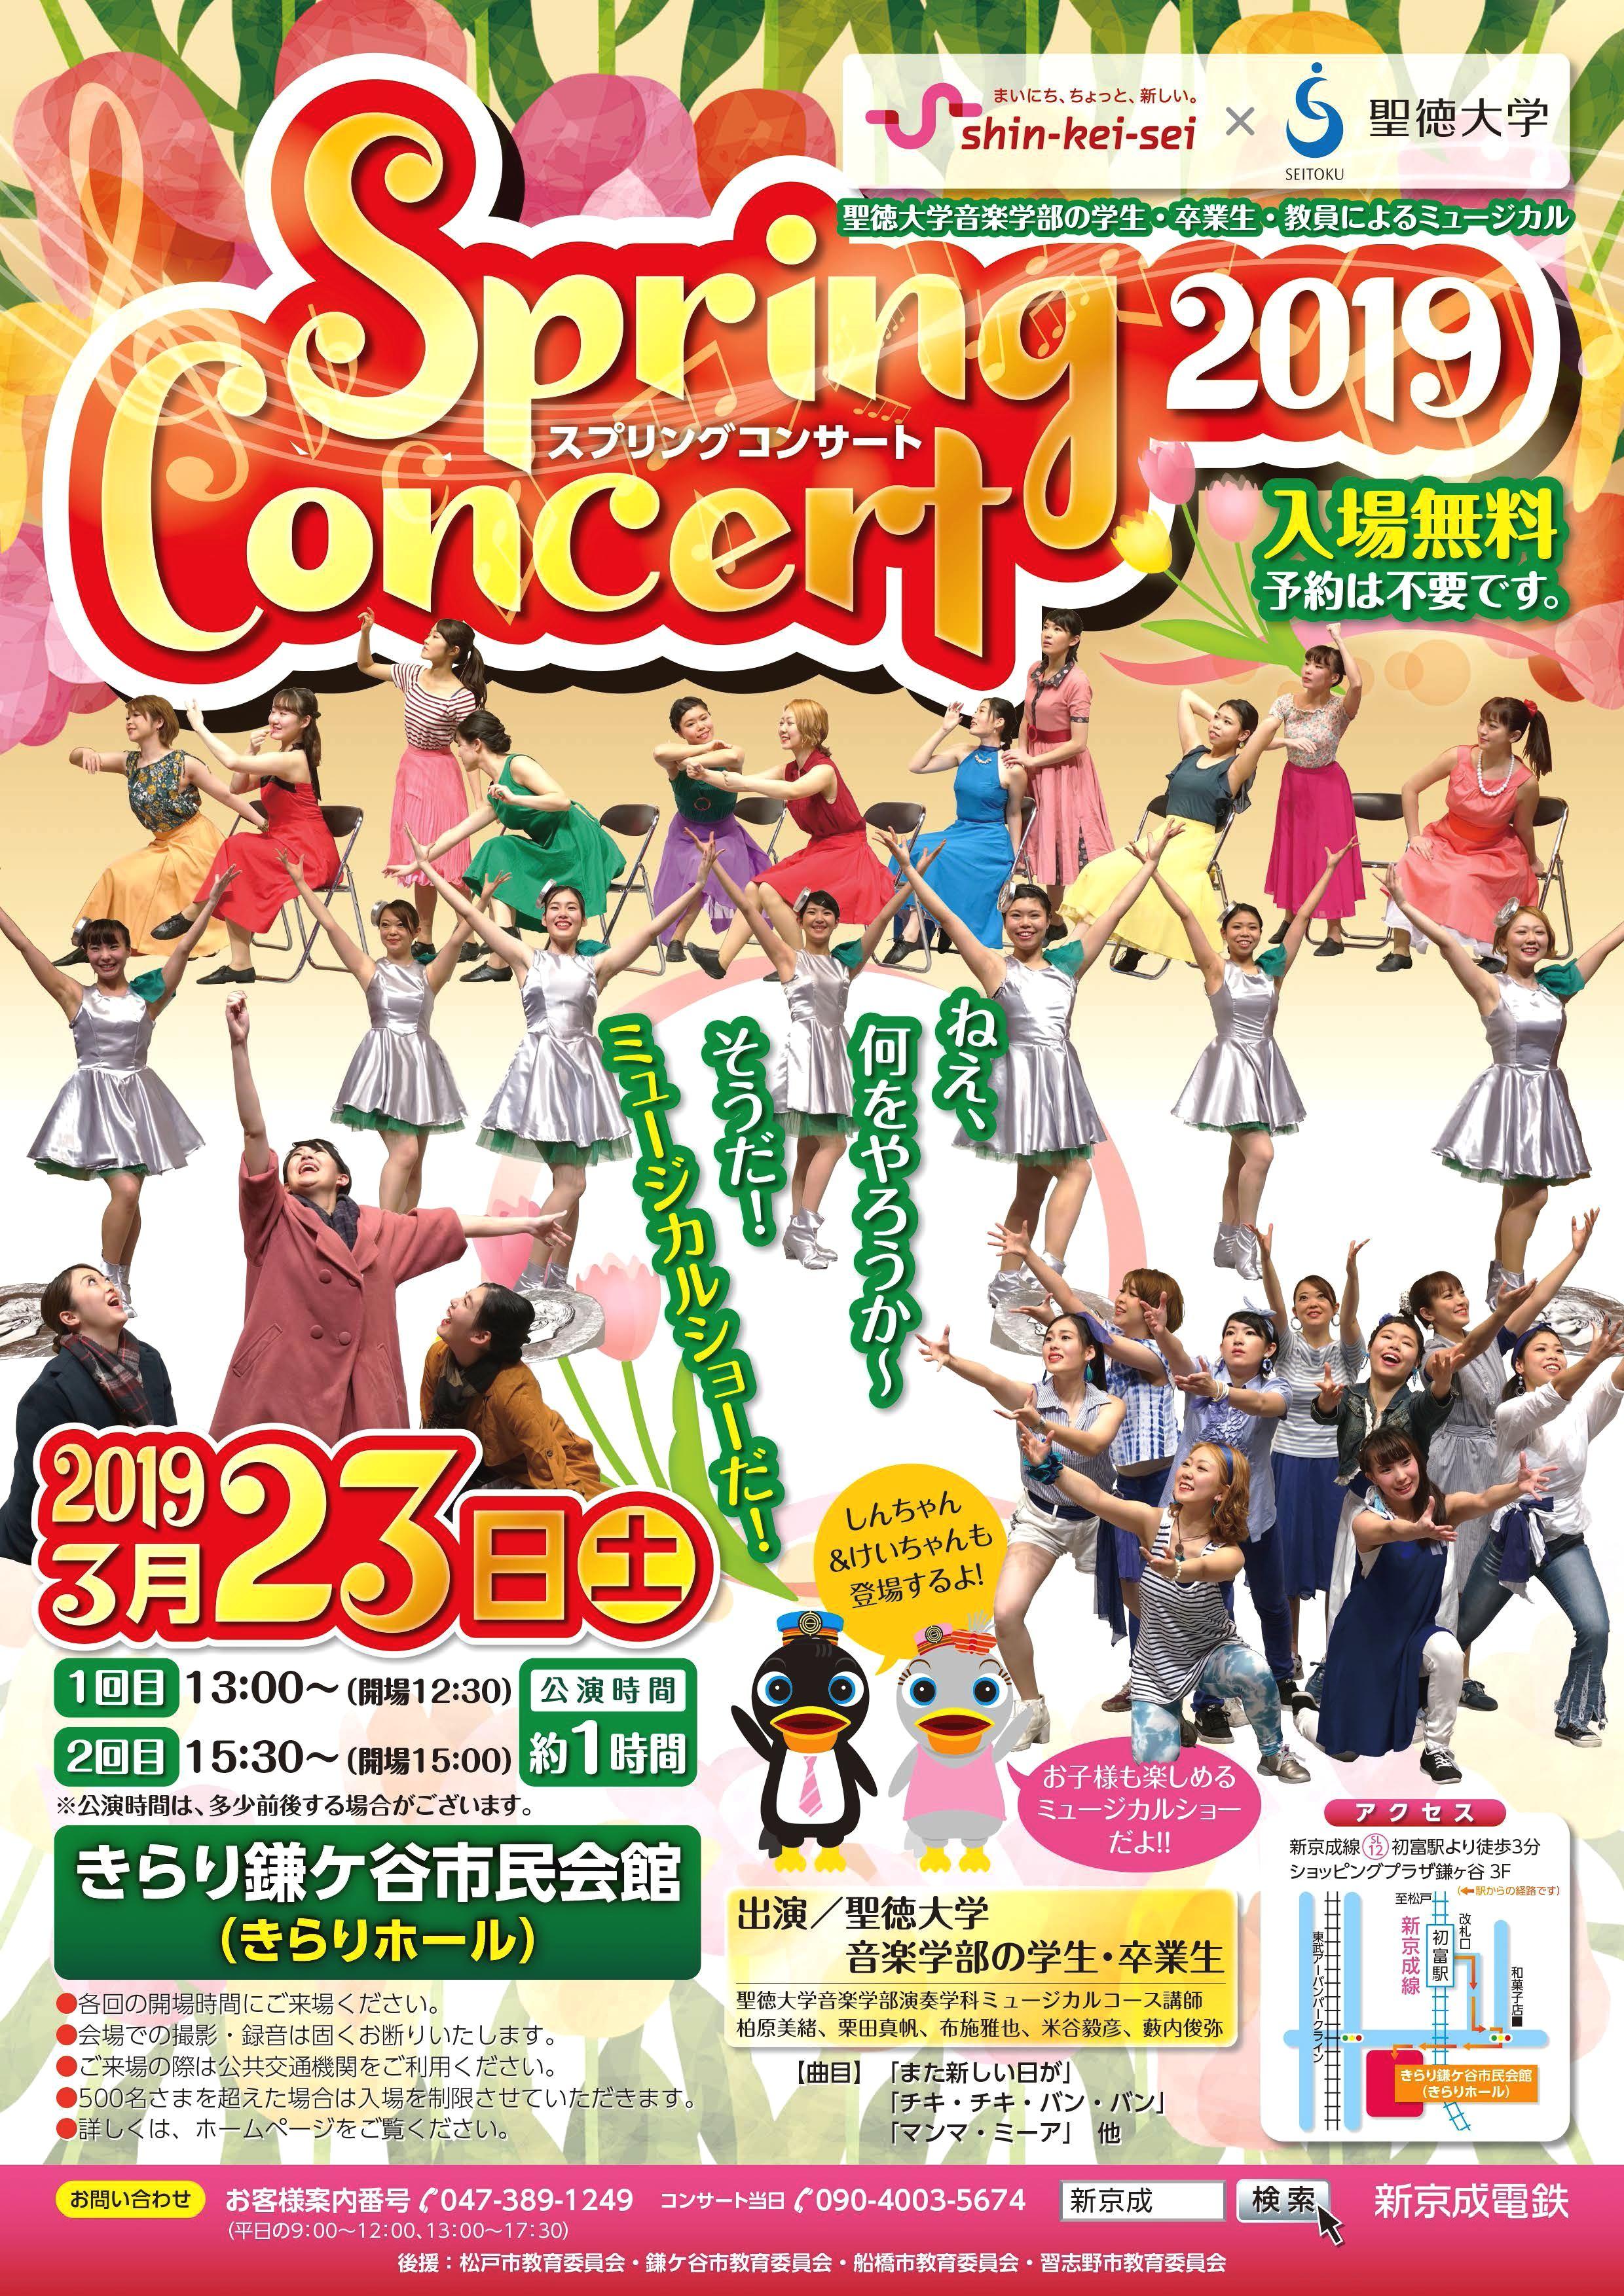 聖徳大学が3月23日に新京成電鉄とのコラボ企画「スプリングコンサート2019」を開催 -- 音楽学部の学生・卒業生・教員らによるミュージカルショー